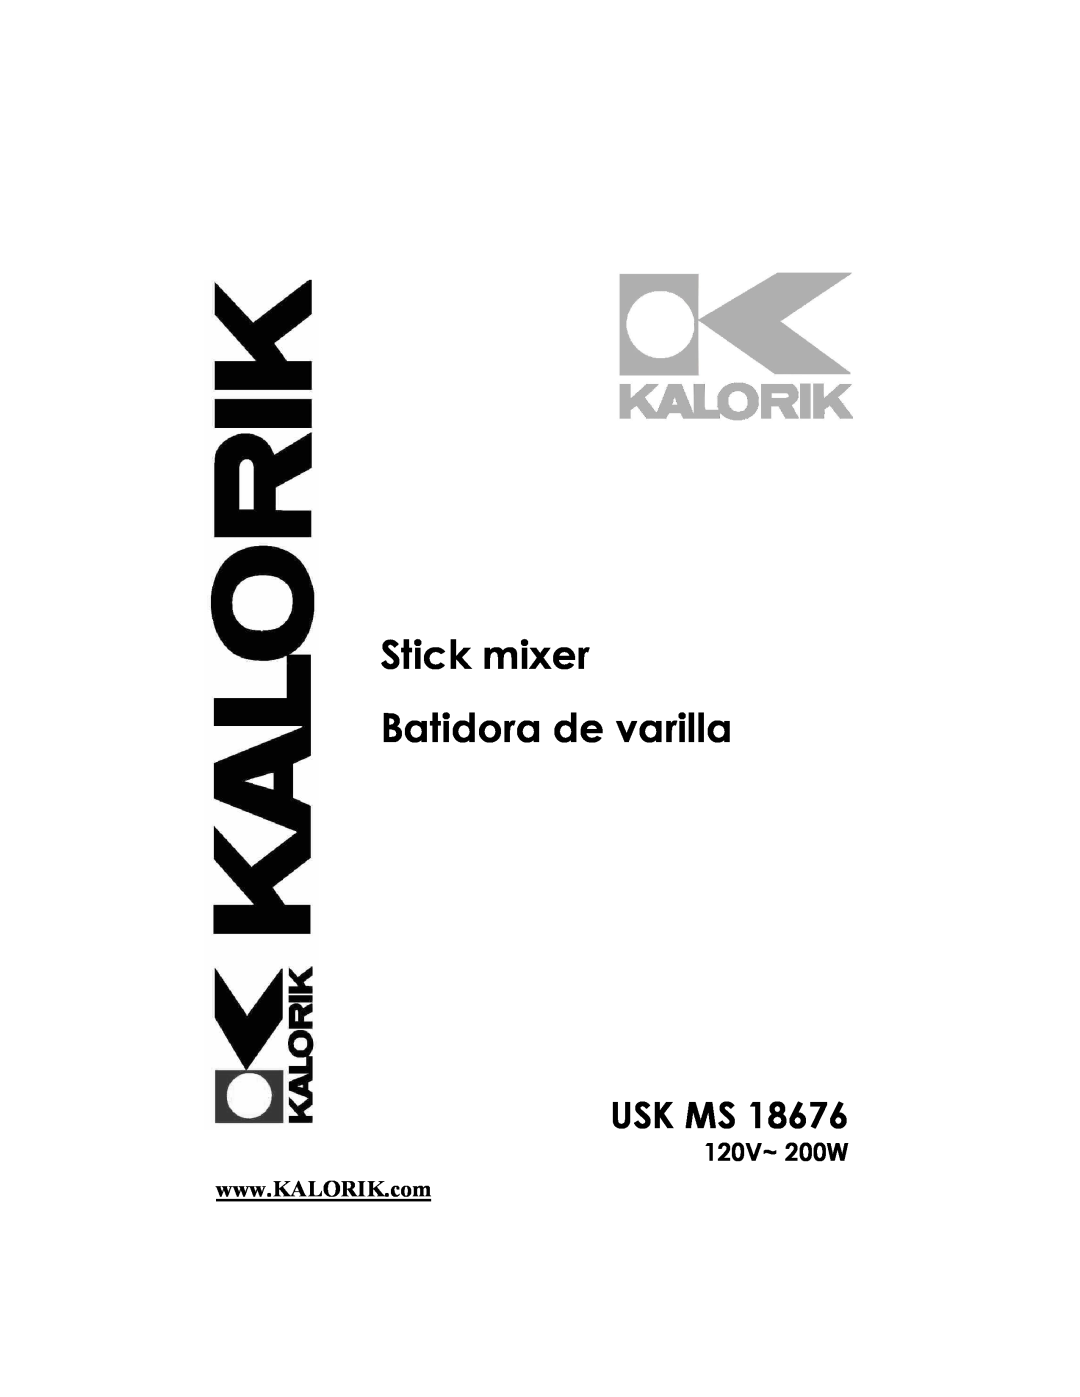 Kalorik USK MS 18676 manual Stick mixer Batidora de varilla, Usk Ms, 120V~ 200W 